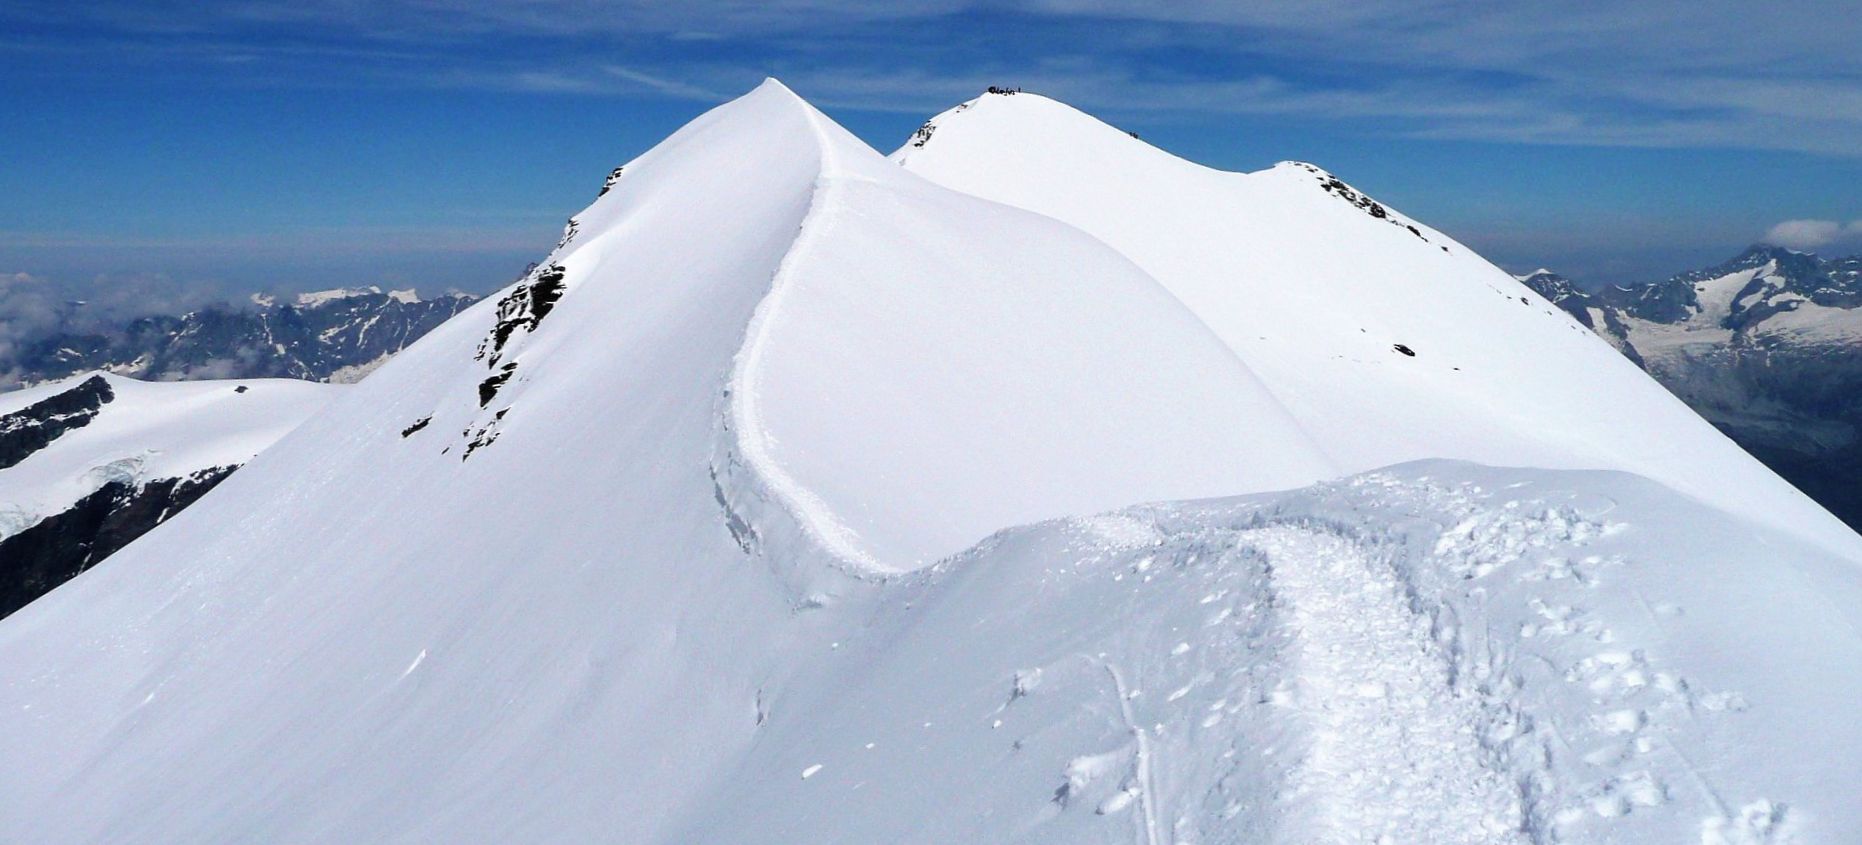 Castor ( 4228 metres ) in the Zermatt Region of the Swiss Alps